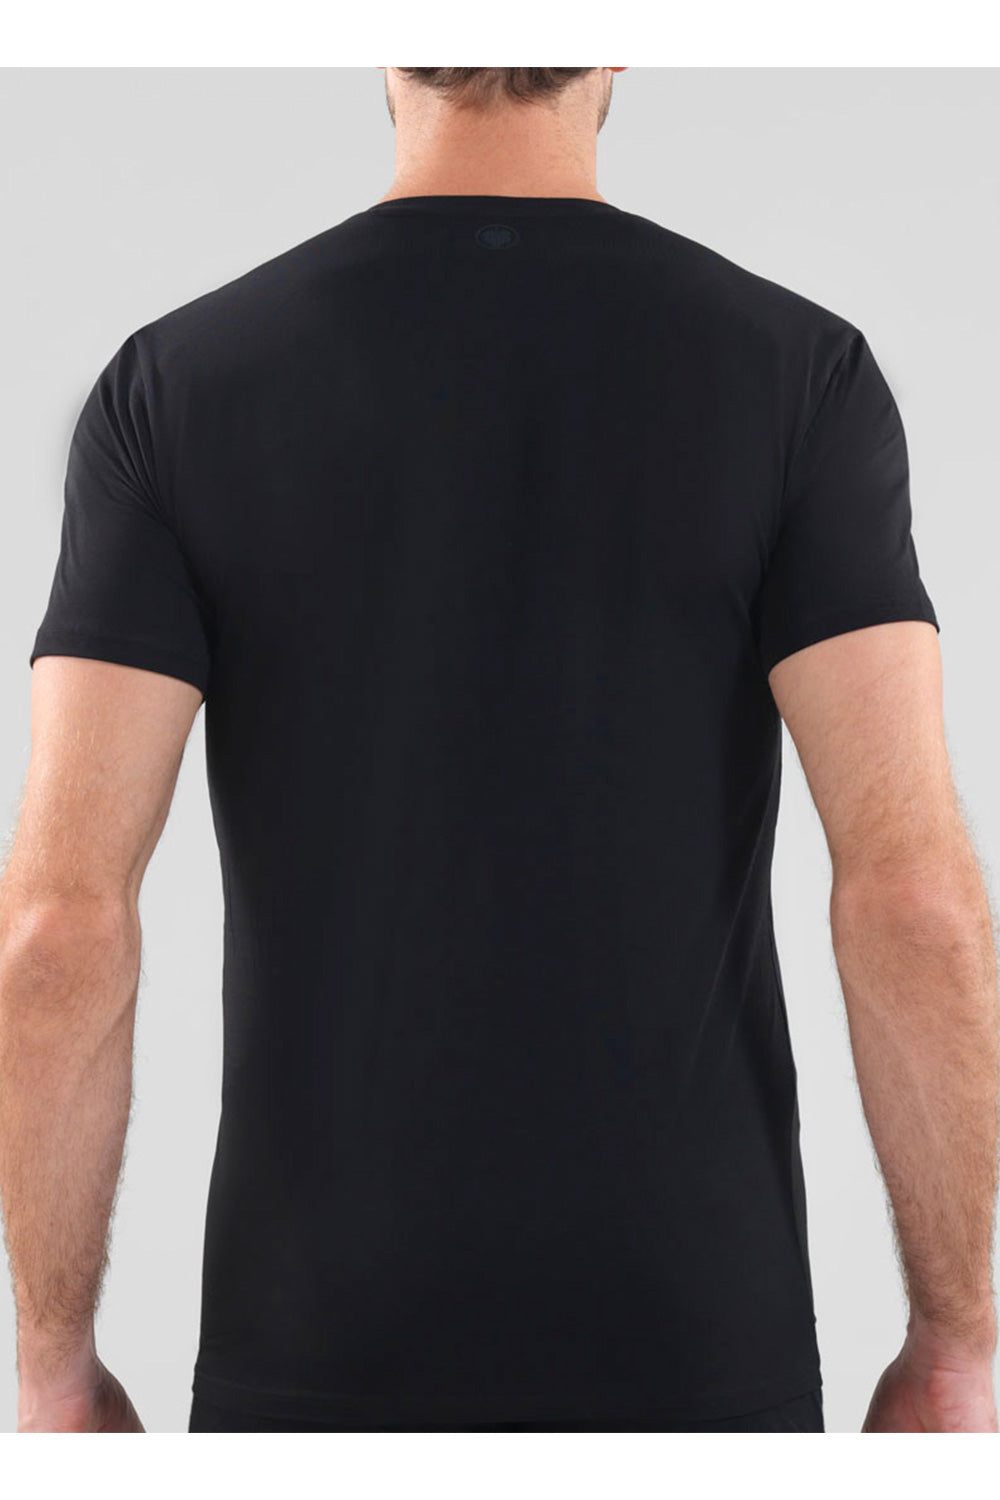 Blackspade Men's Aura T-Shirt - 9506